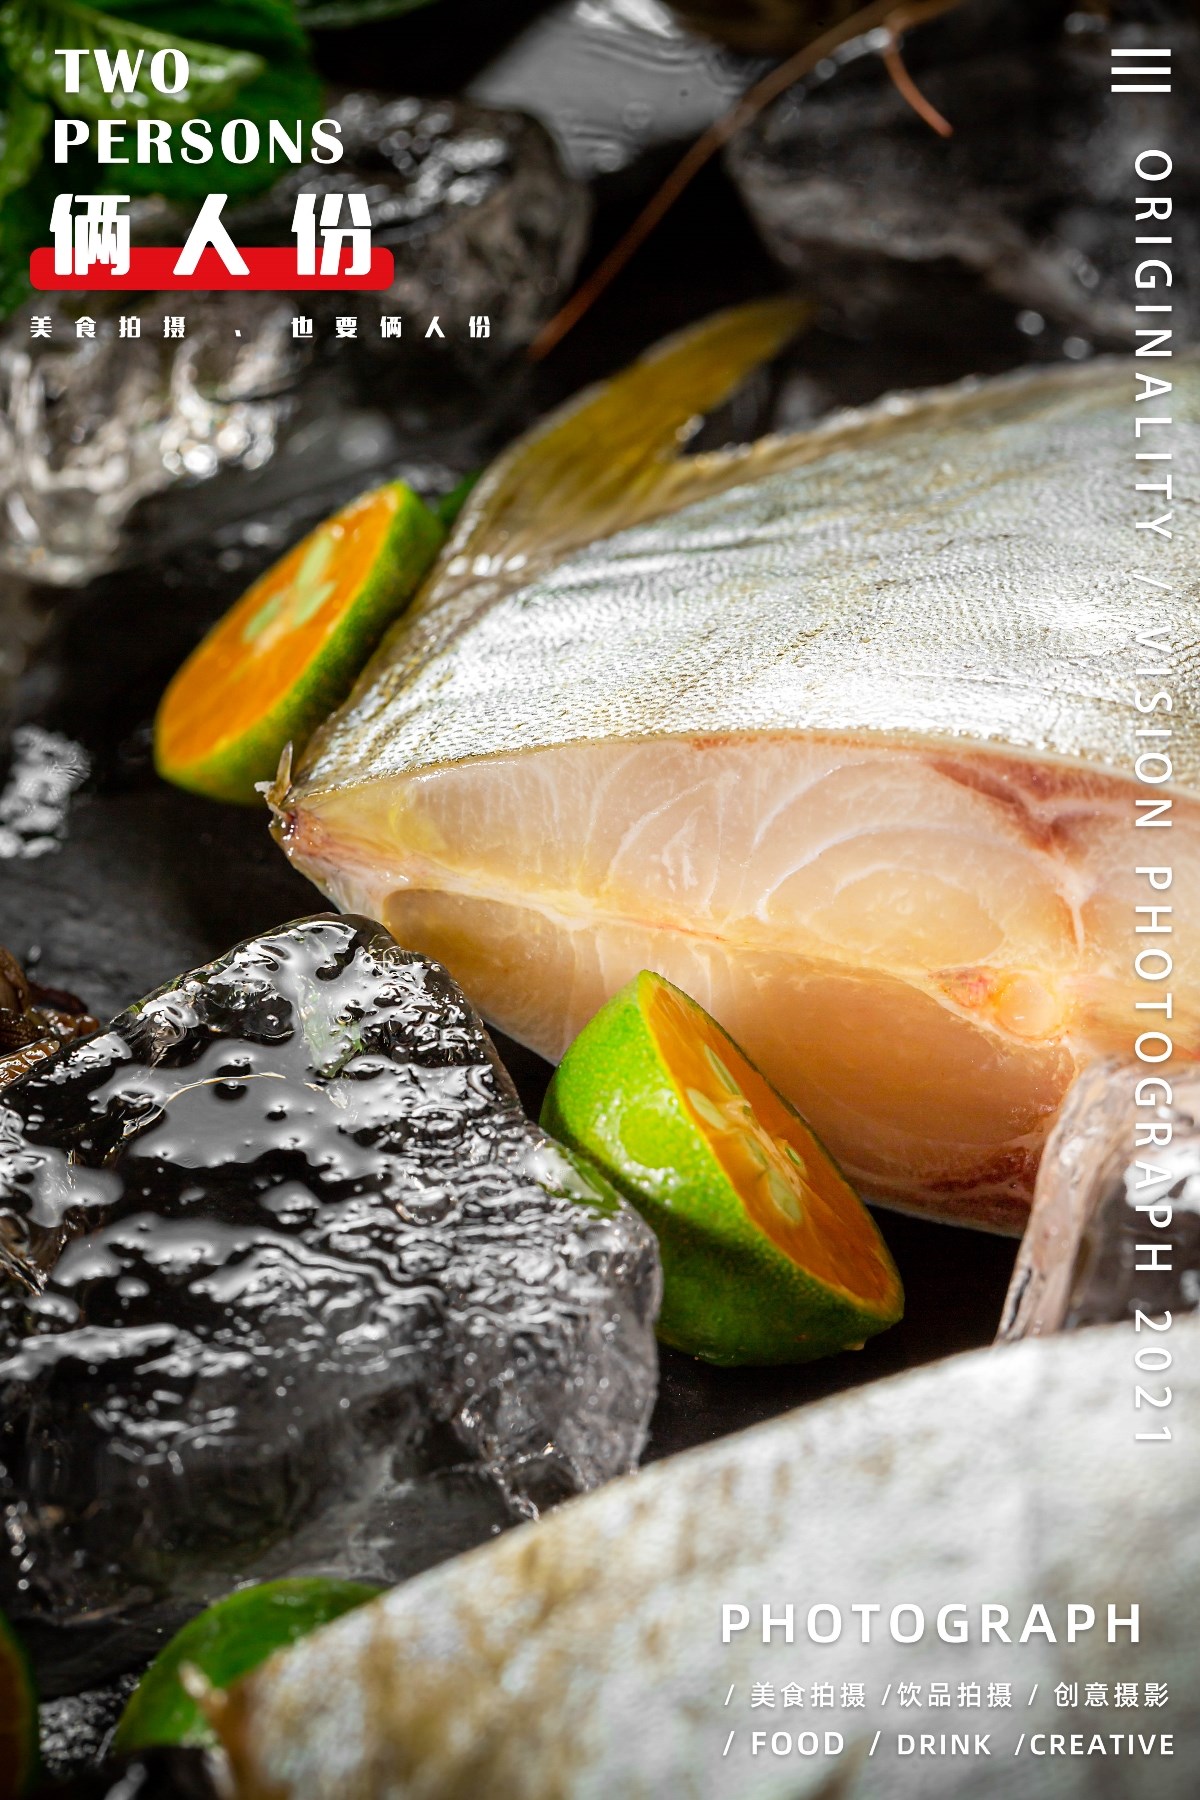 海鲜金鲳鱼 X 俩人份美食摄影 美食拍摄